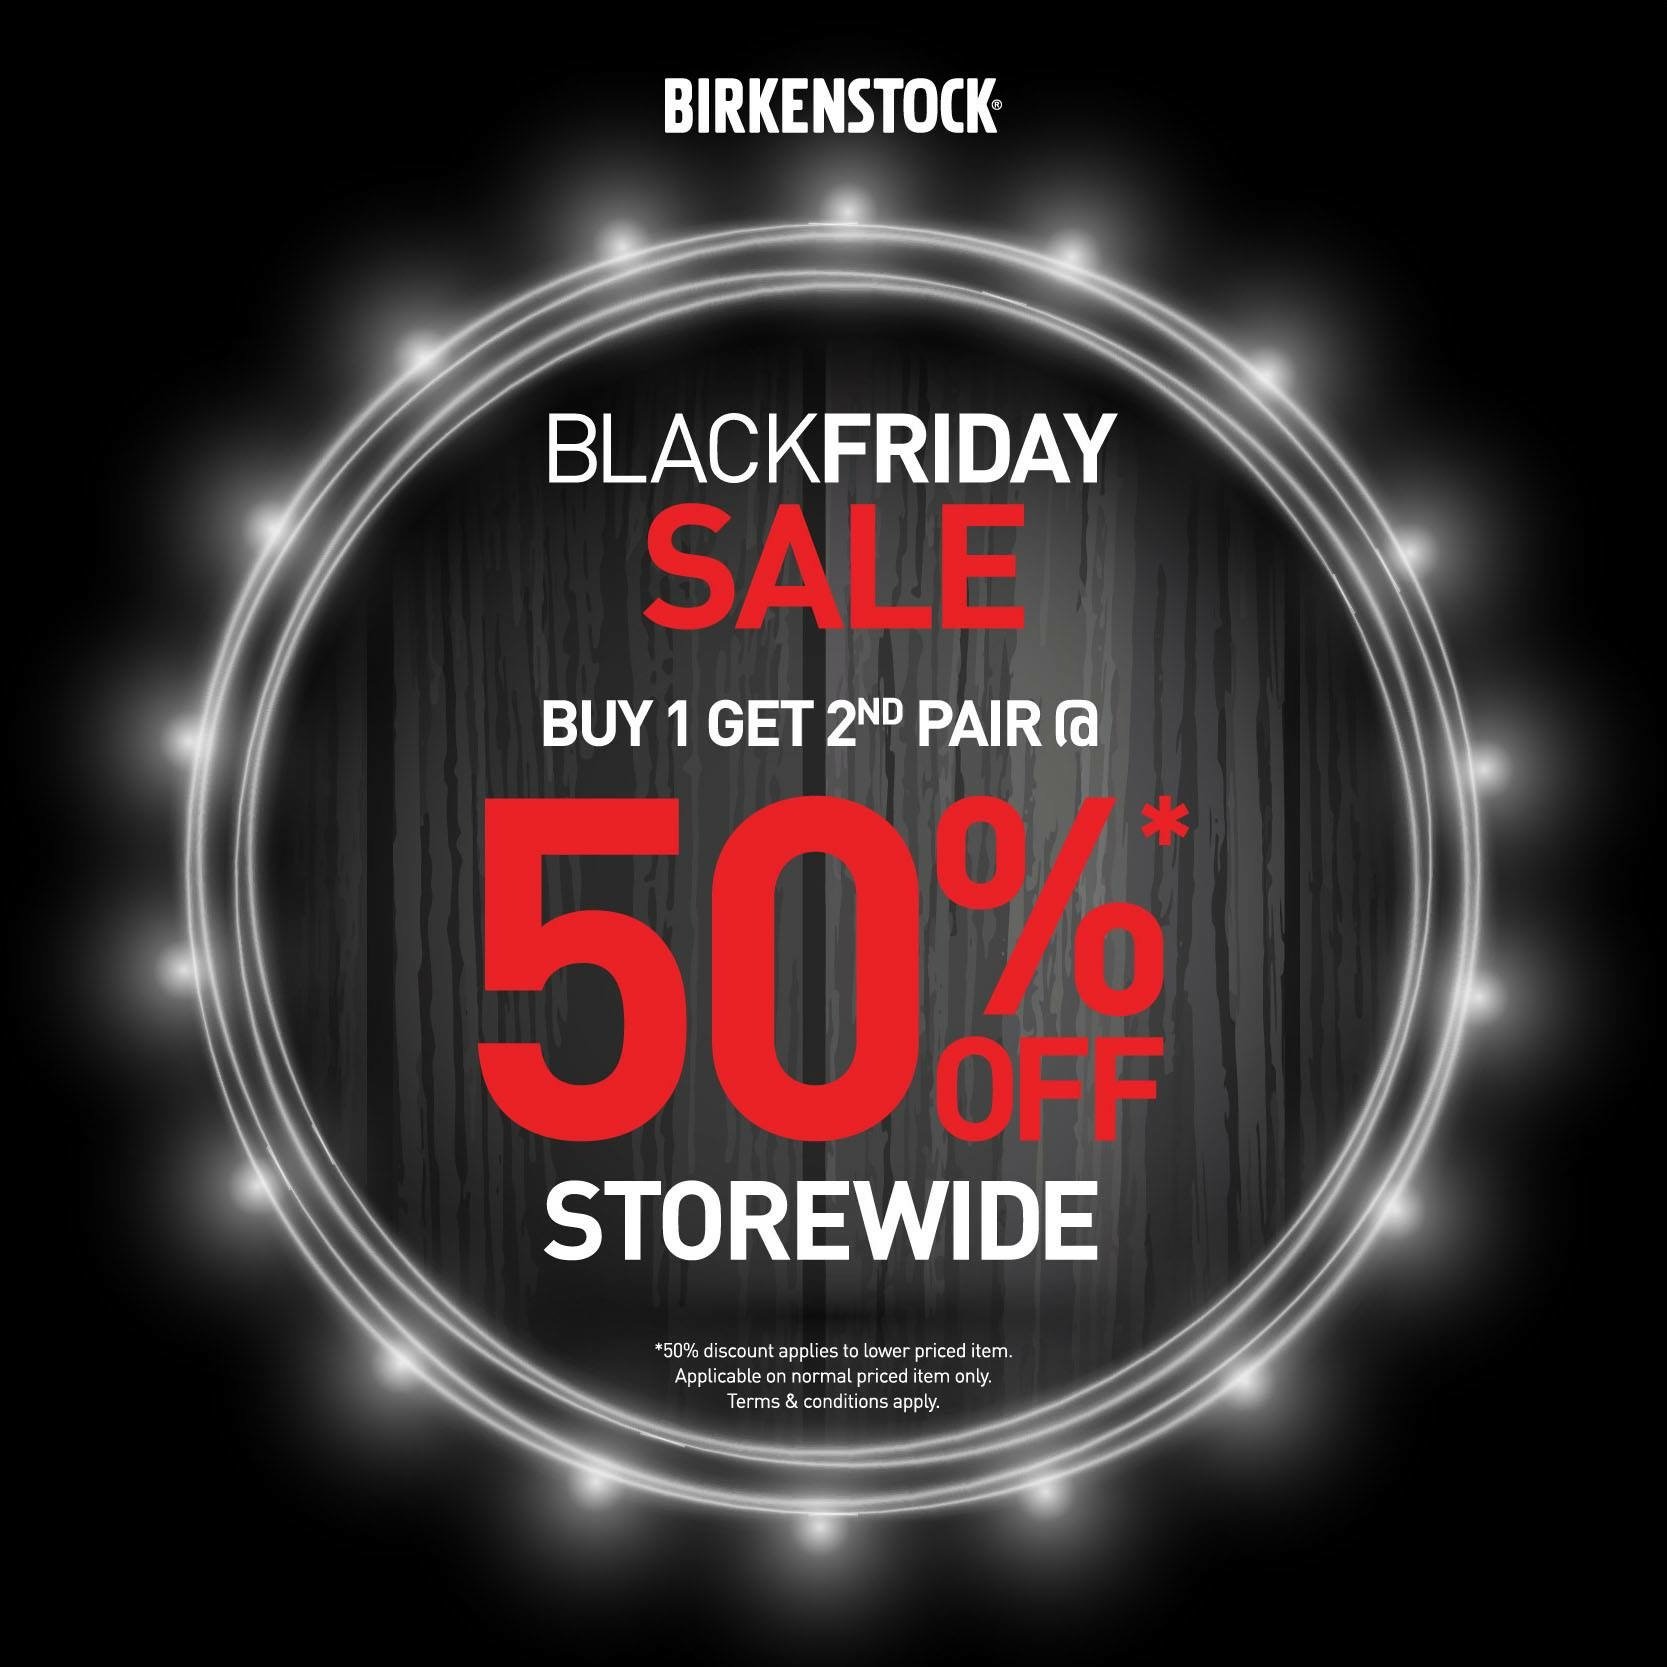 black friday 2018 birkenstock